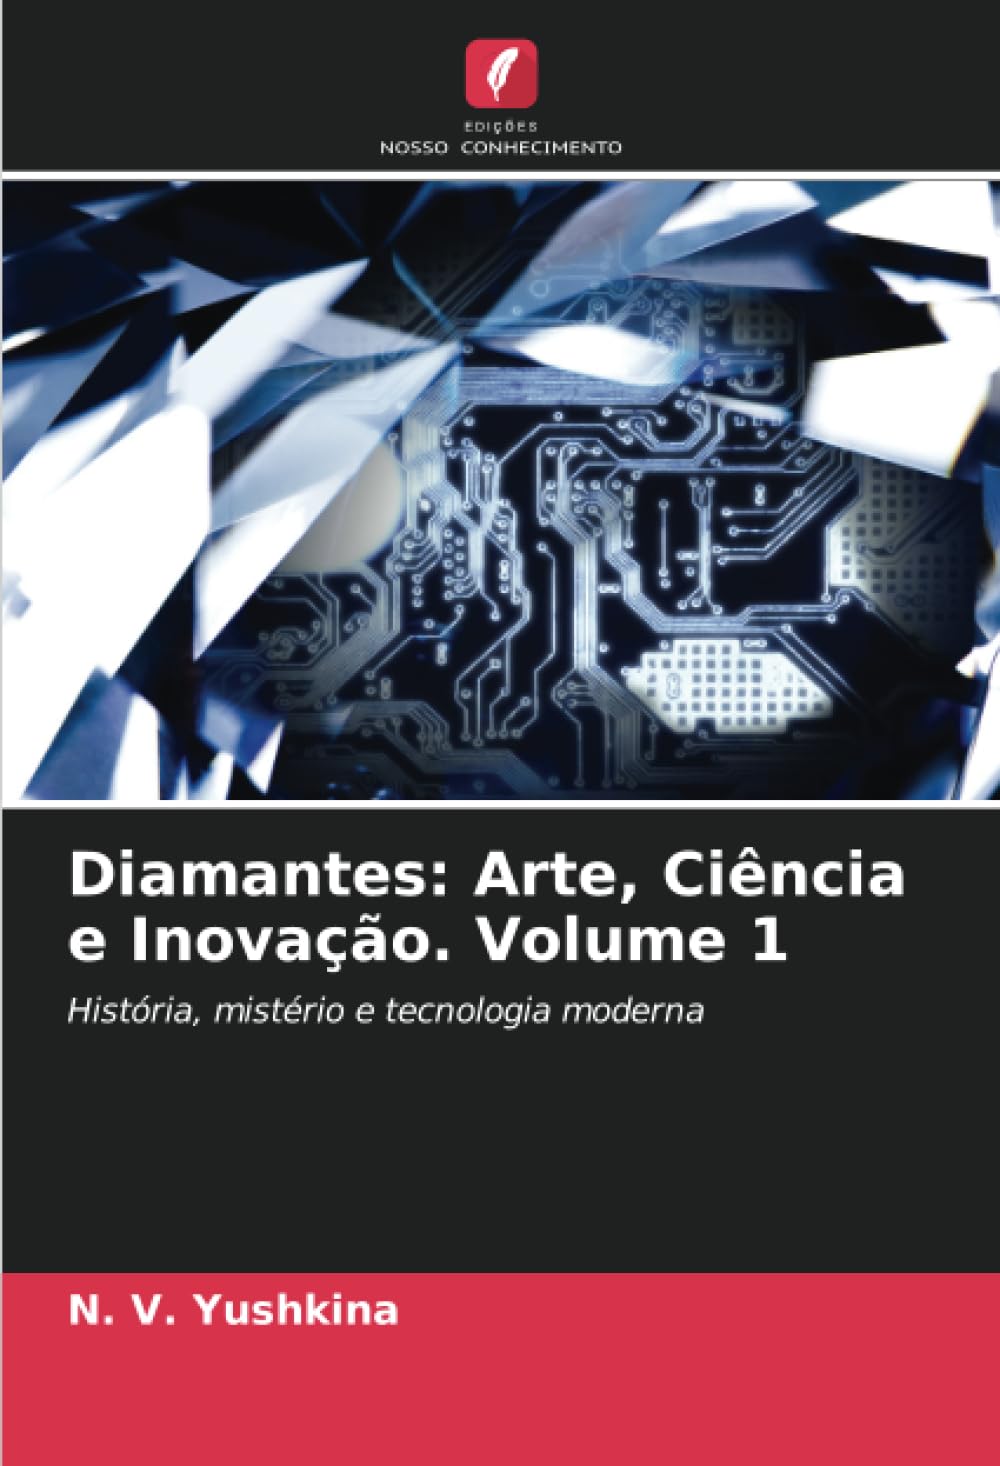 Diamantes: Arte, Ciência e Inovação. Volume 1: História, mistério e tecnologia moderna